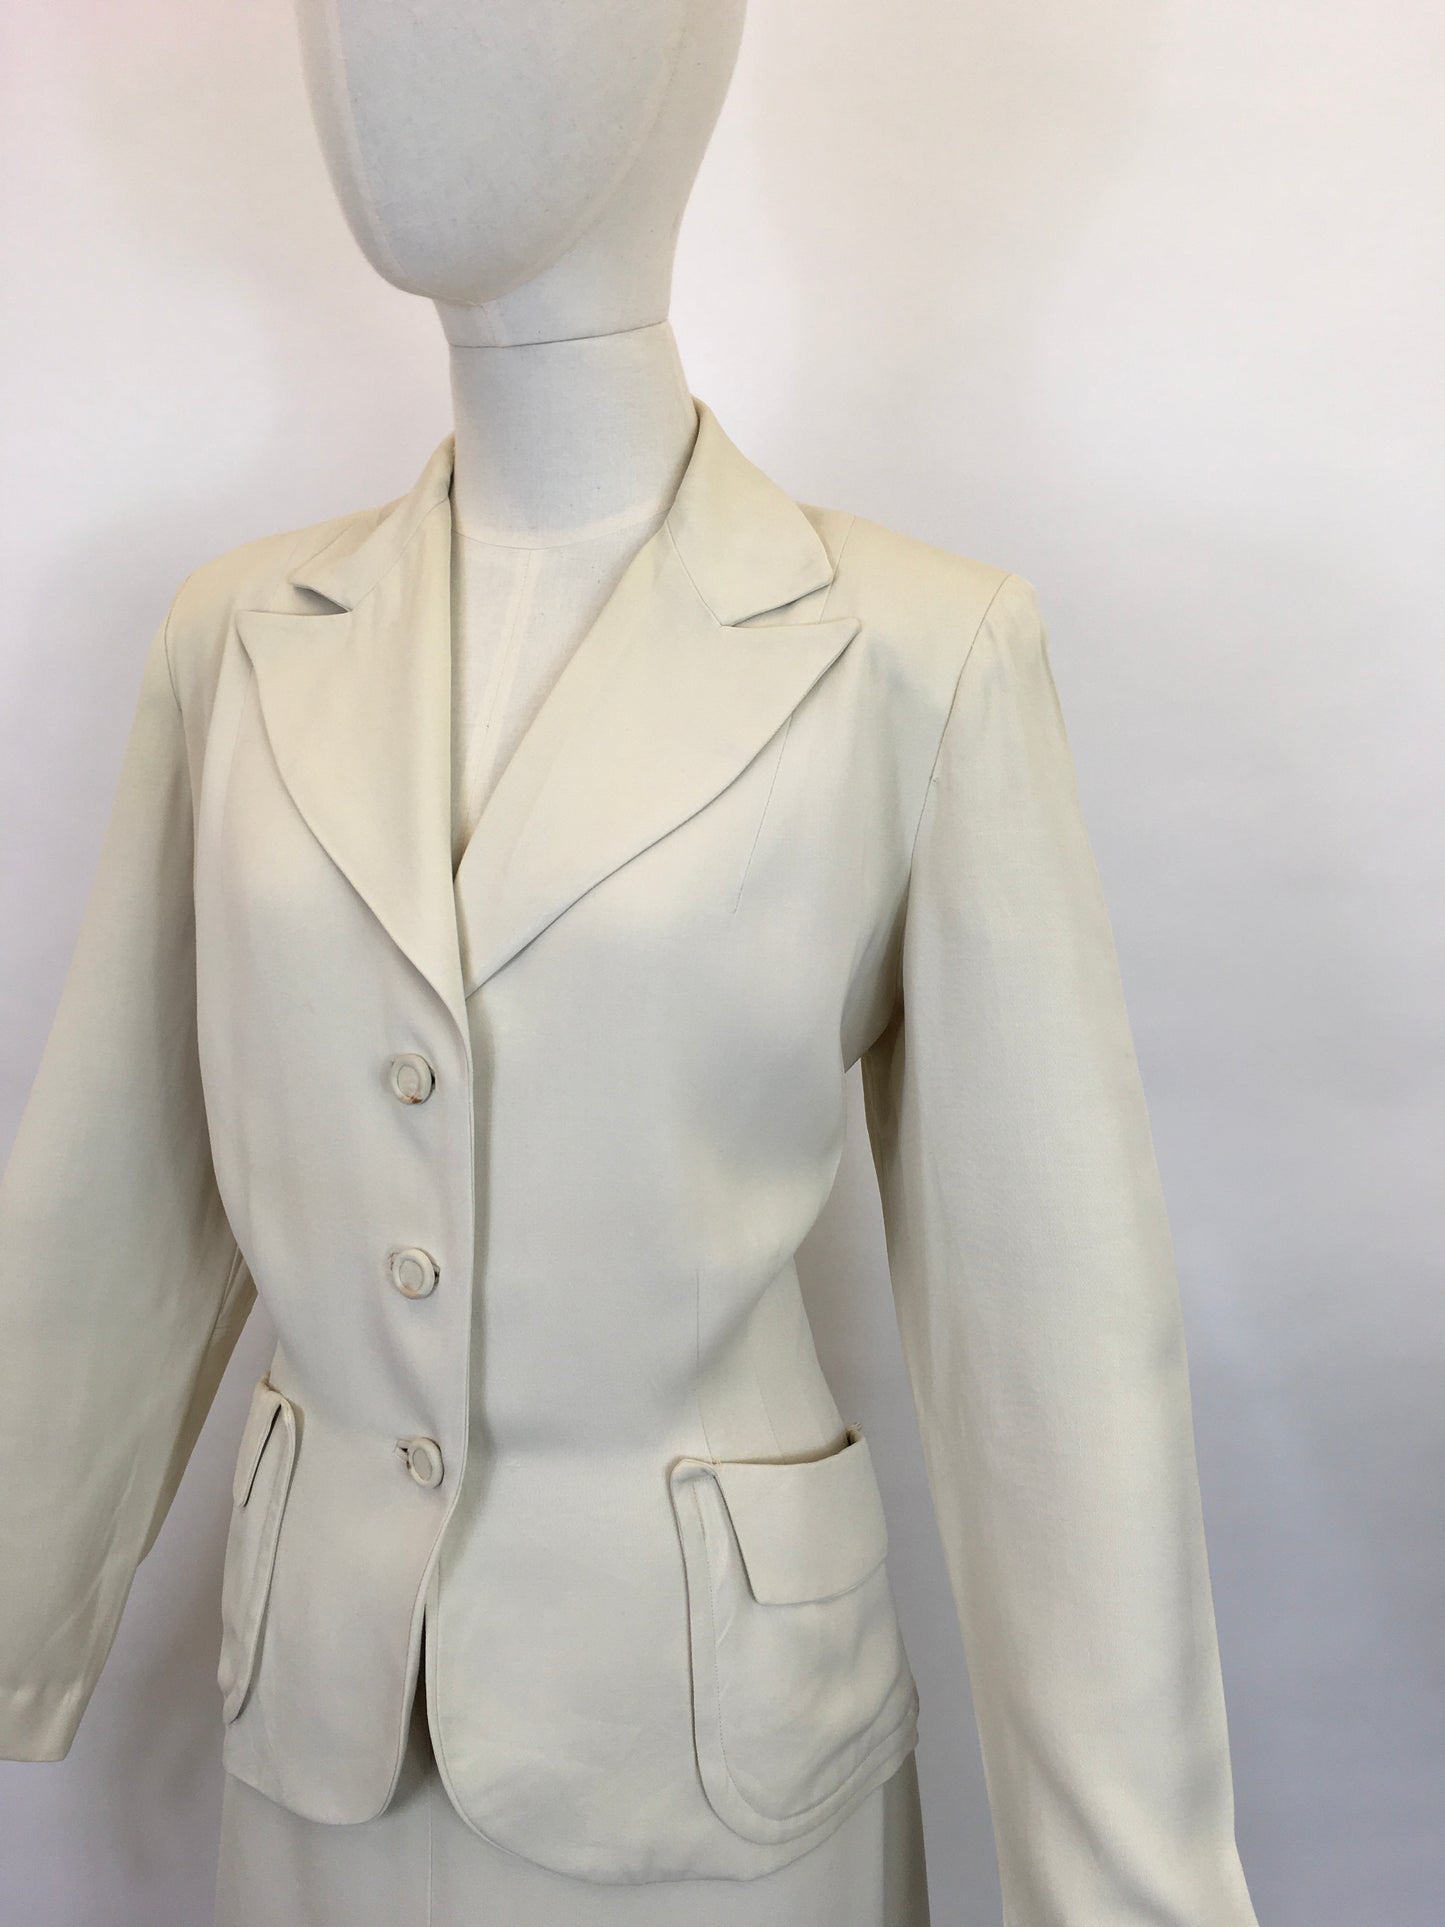 Original 1940’s STUNNING Cream 2pc Suit - With Exquisite Iconic 40’s Tailoring